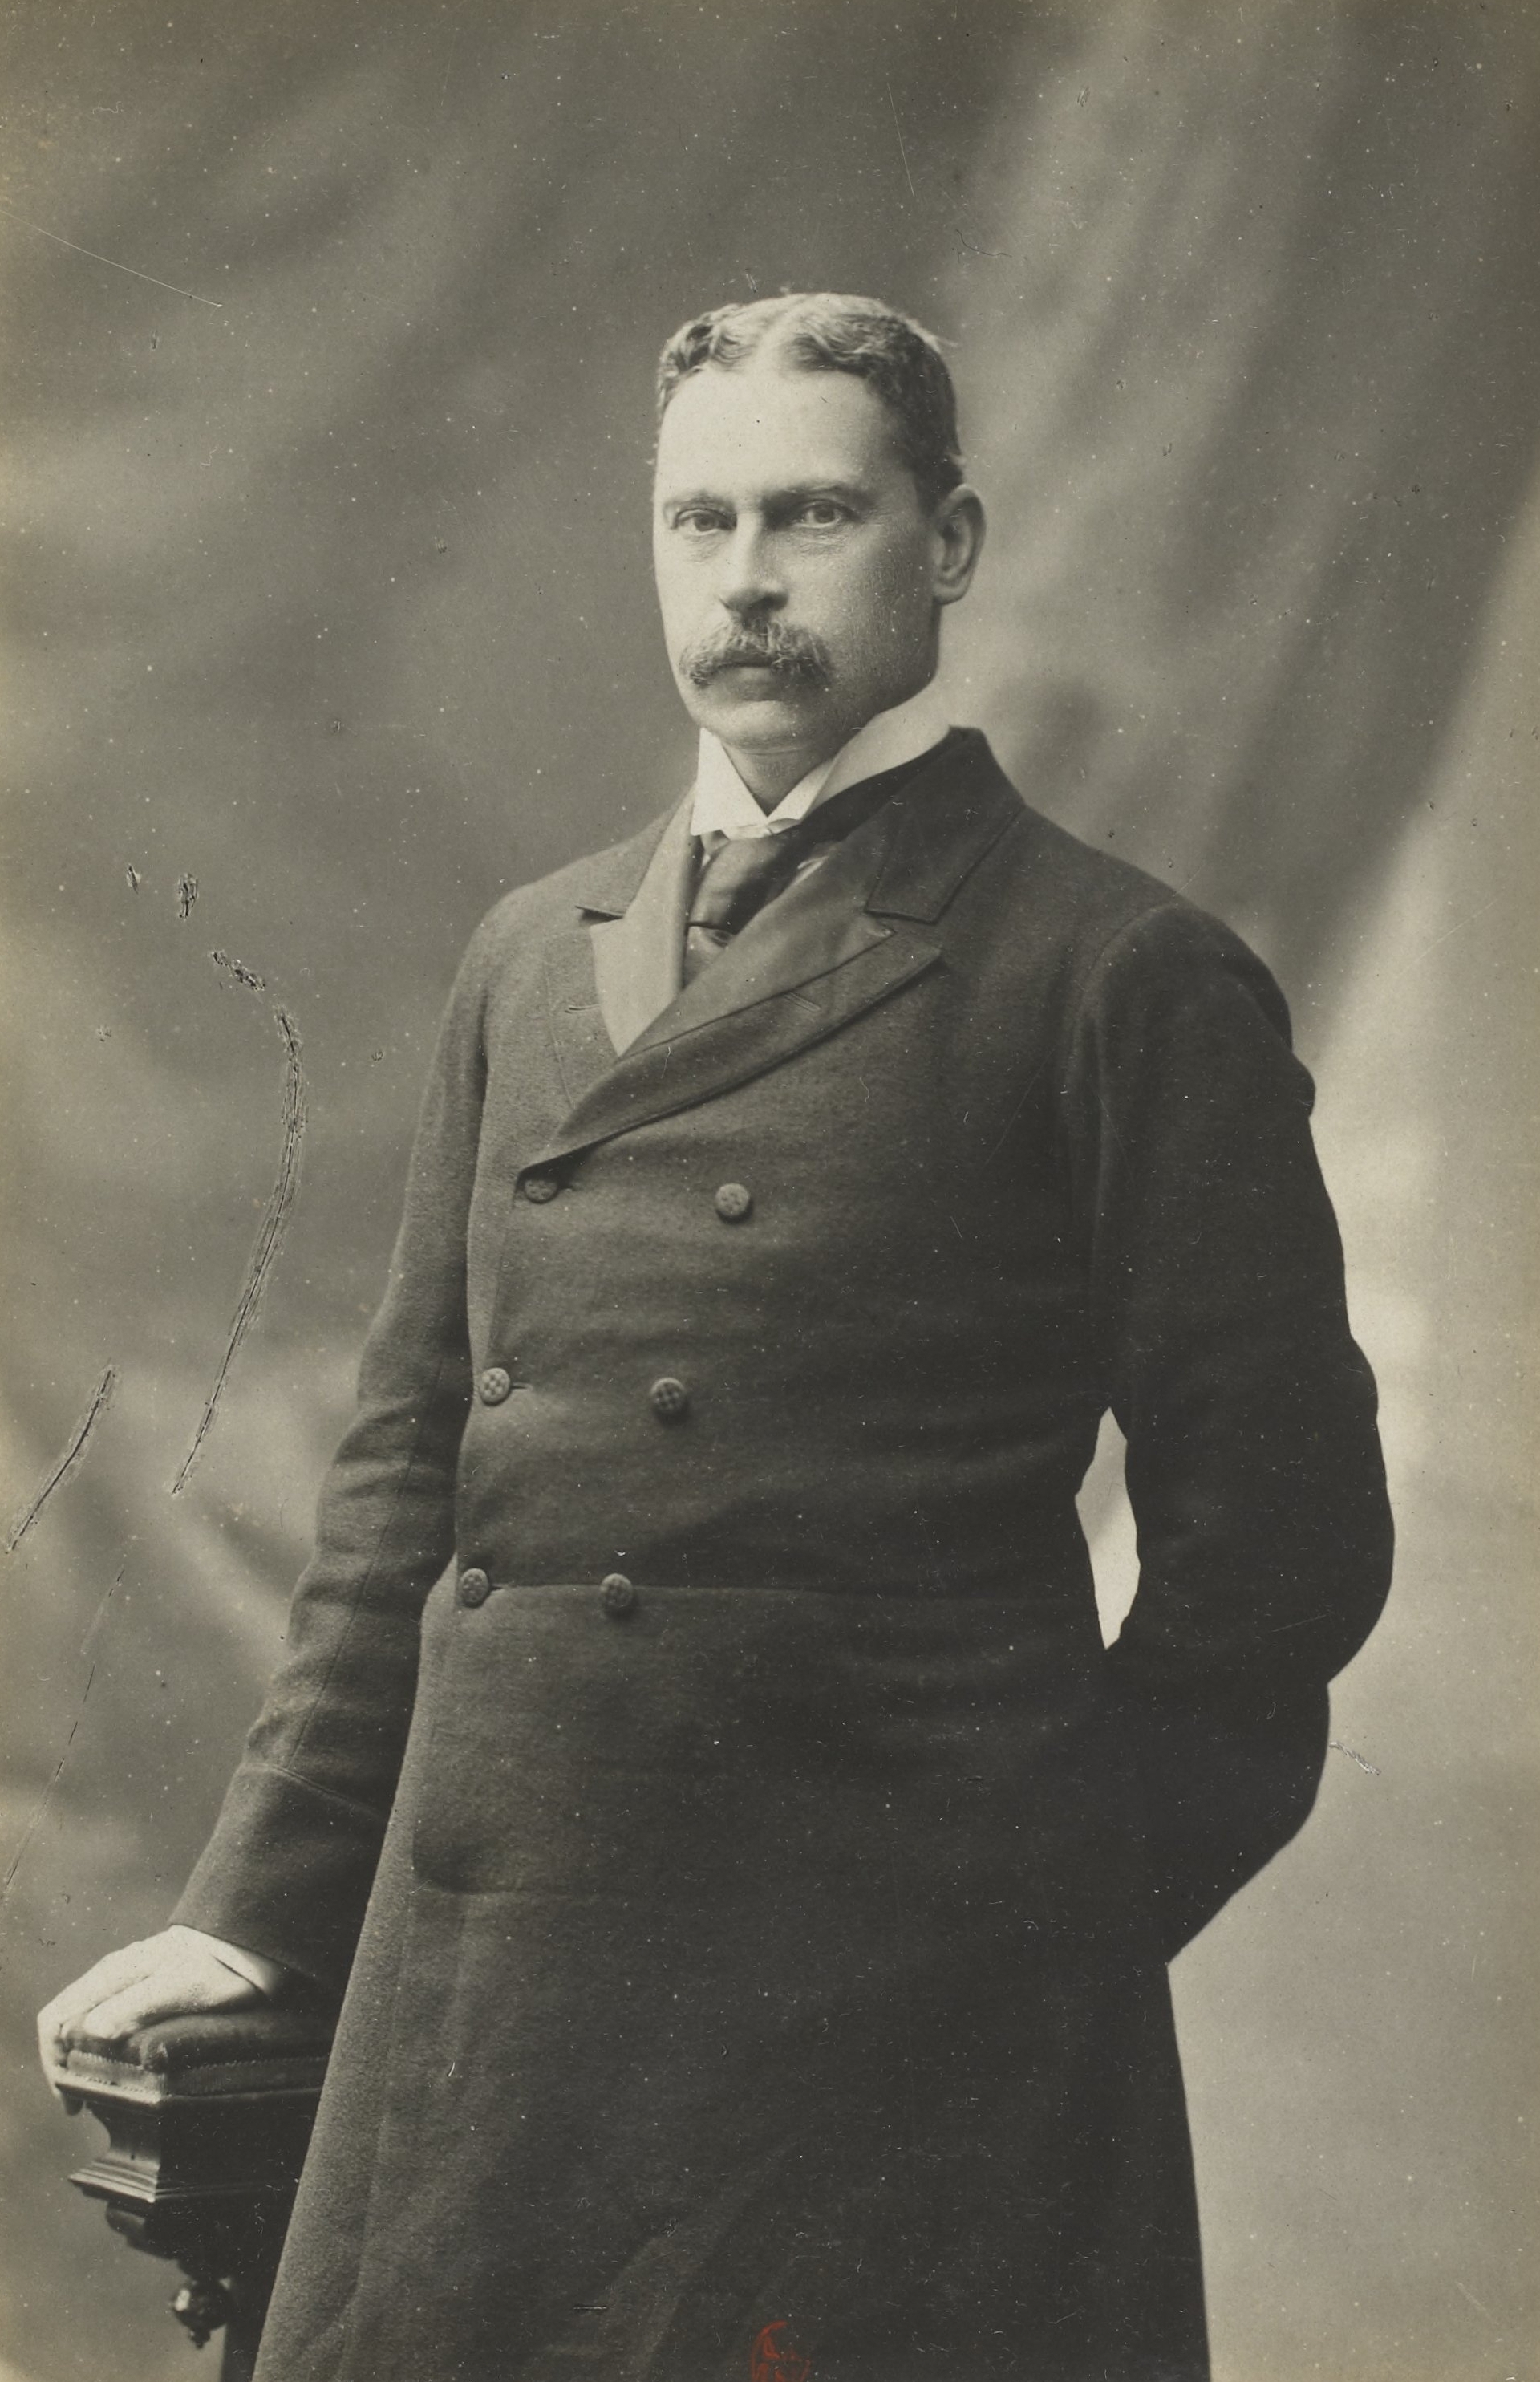 Exposition universelle de 1900 - portraits des commissaires généraux-colonel Jekyll